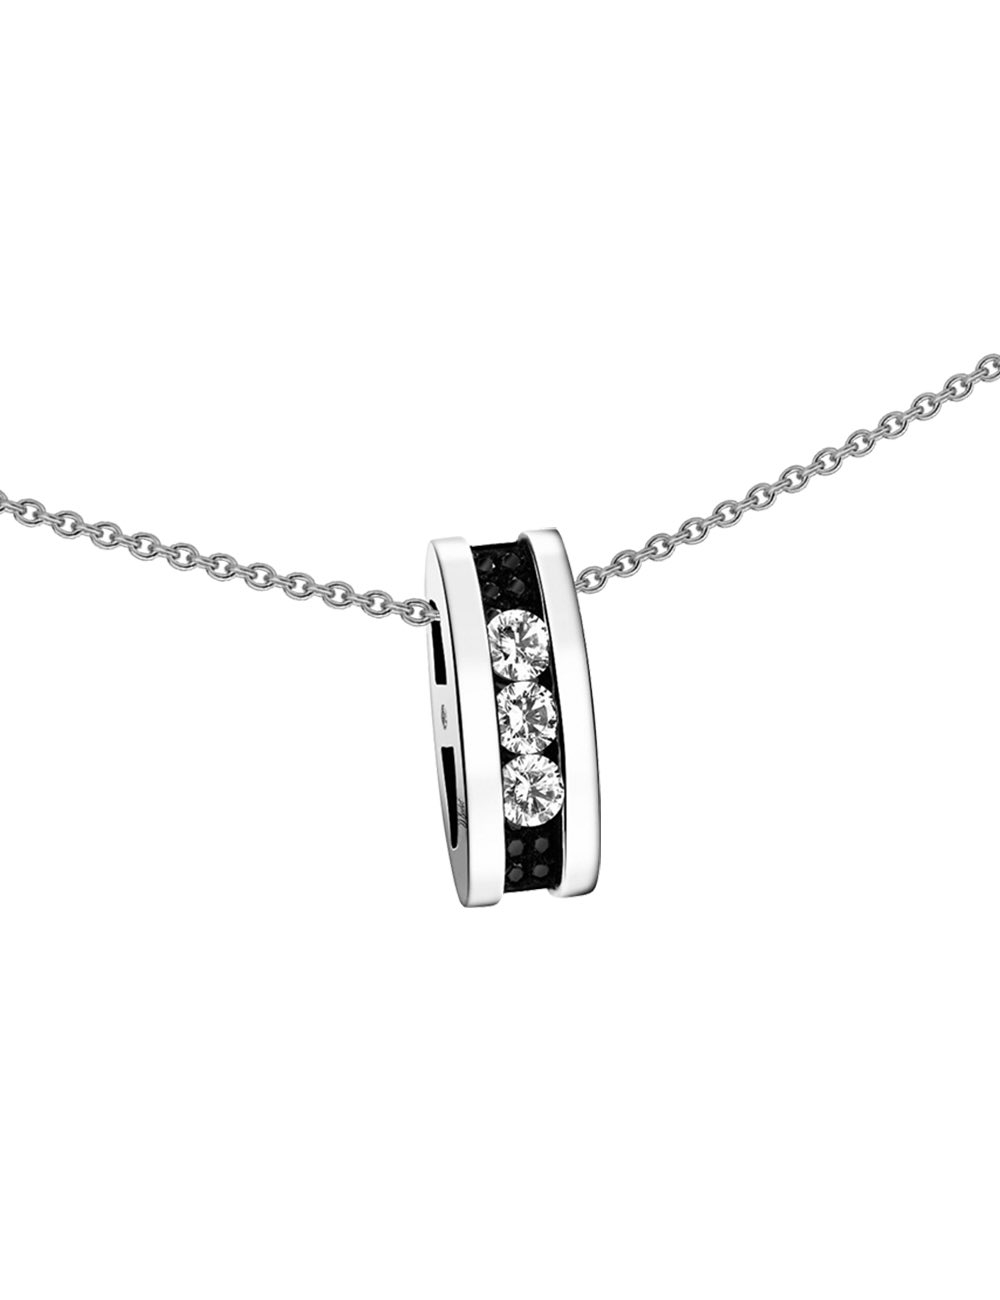 Le cadeau idéal : un collier serti d'une Trilogy de diamants blancs